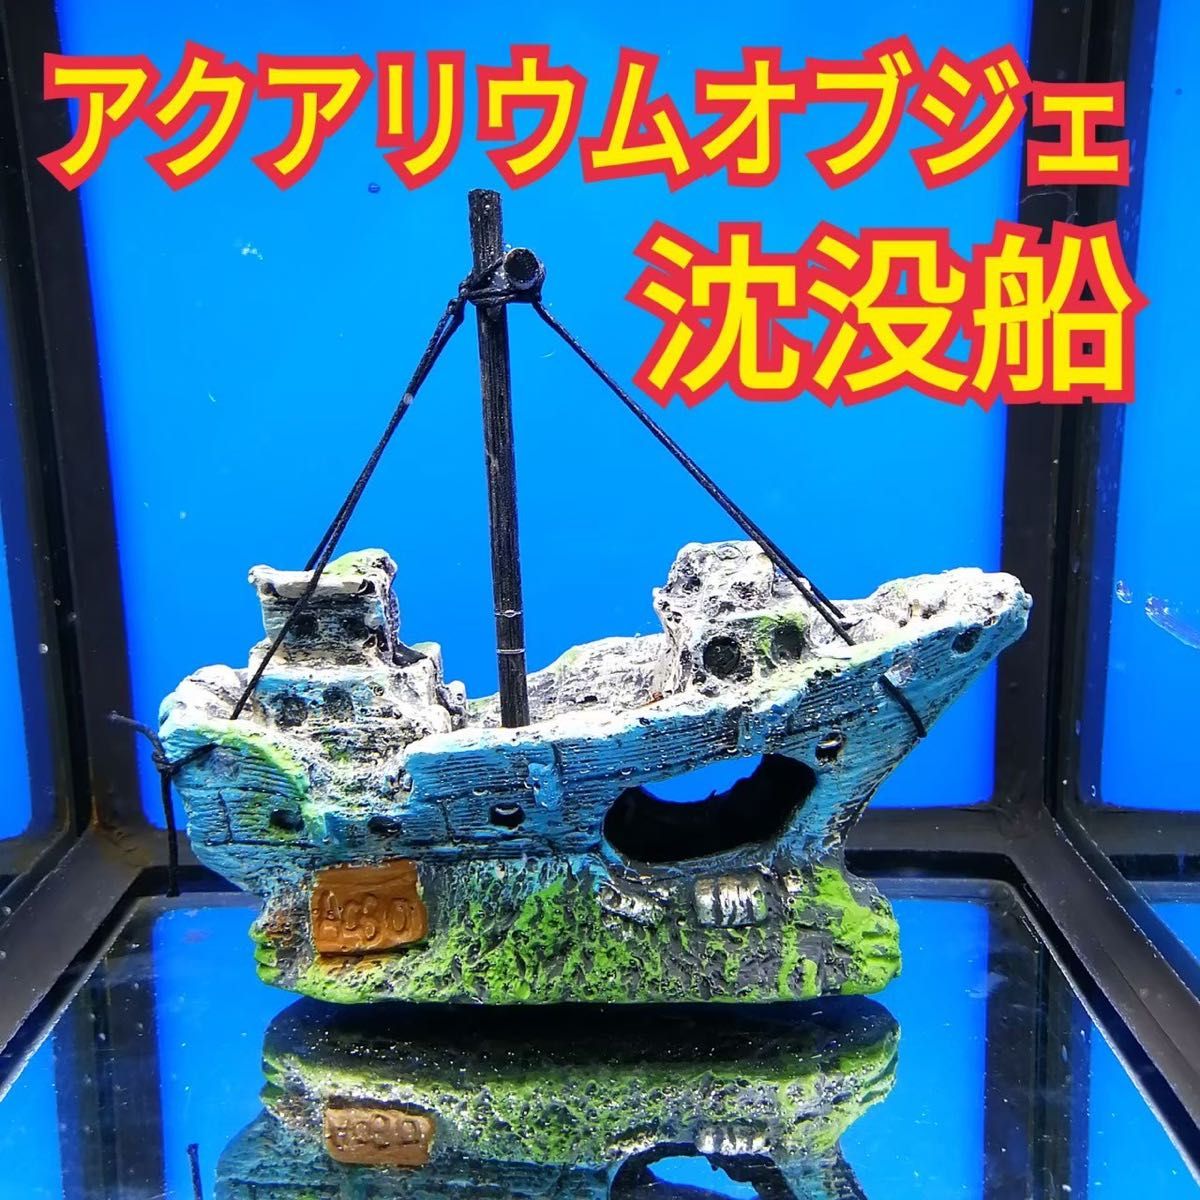 沈没船 水槽 アクアリウム オブジェ 遺跡 オーナメント 飾り 模型 熱帯魚 海水魚 メダカ グッピー ミナミヌマエビ レイアウト